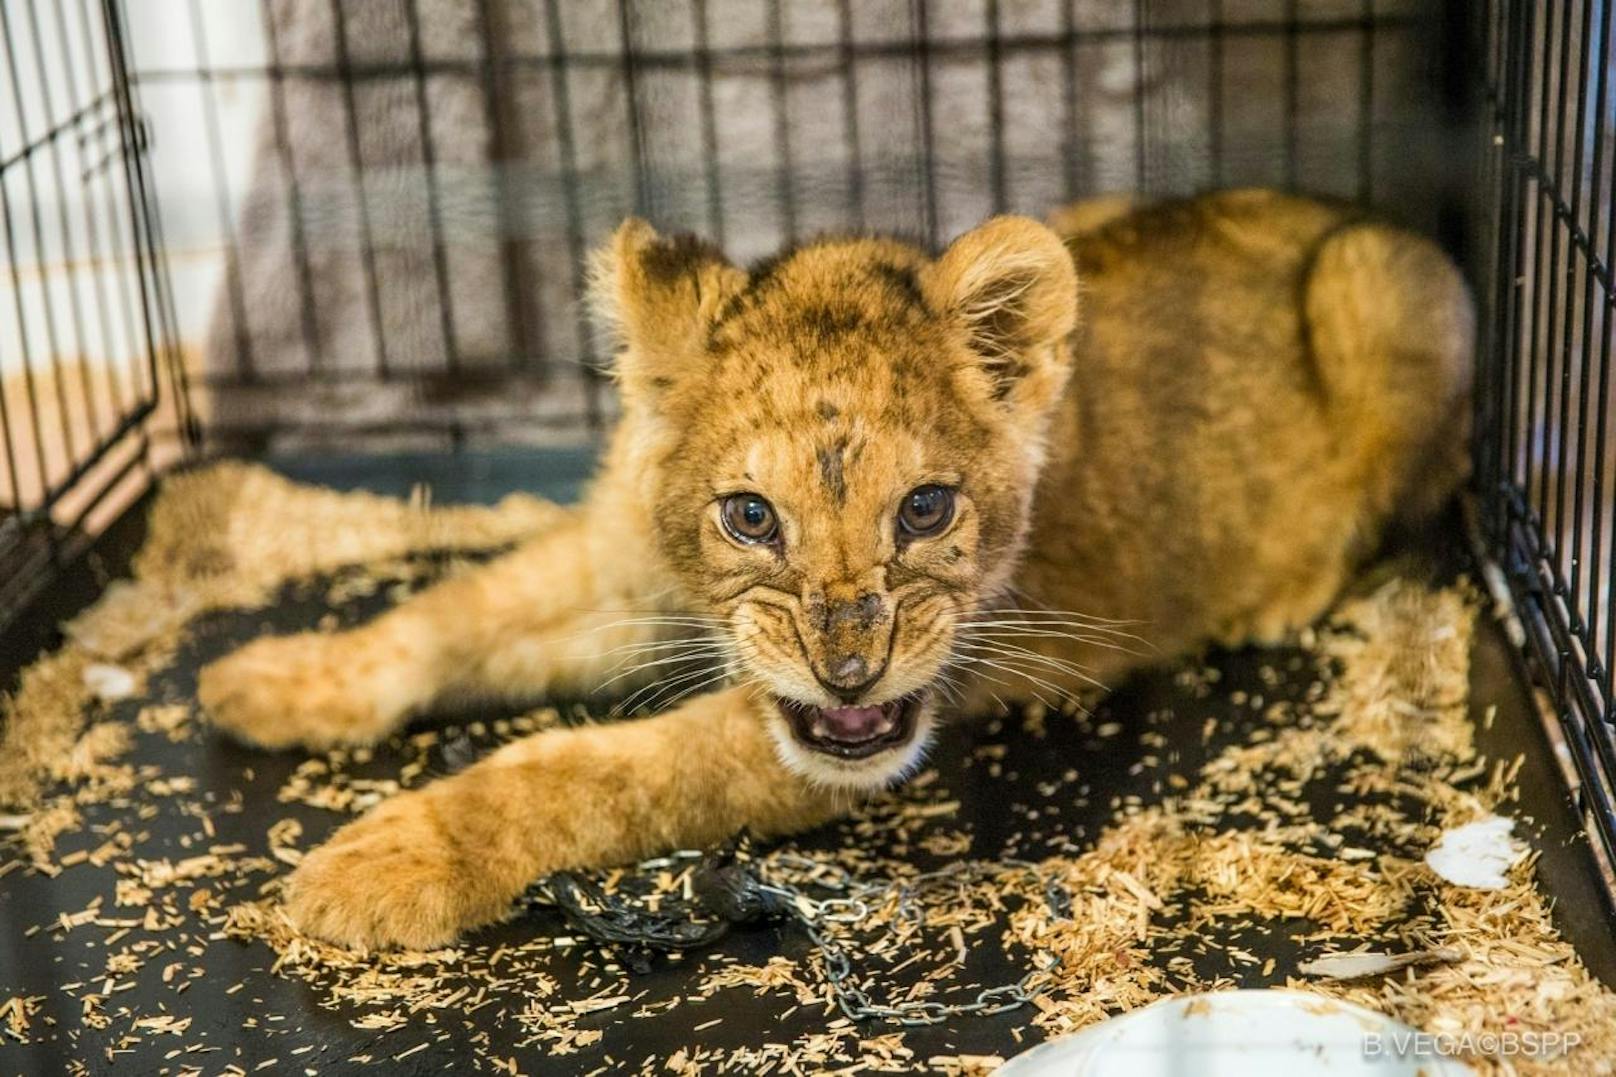 Die Pariser Feuerwehr rettete den halb verhungerten Löwen und übergab ihn an einen Tierschutzverein.